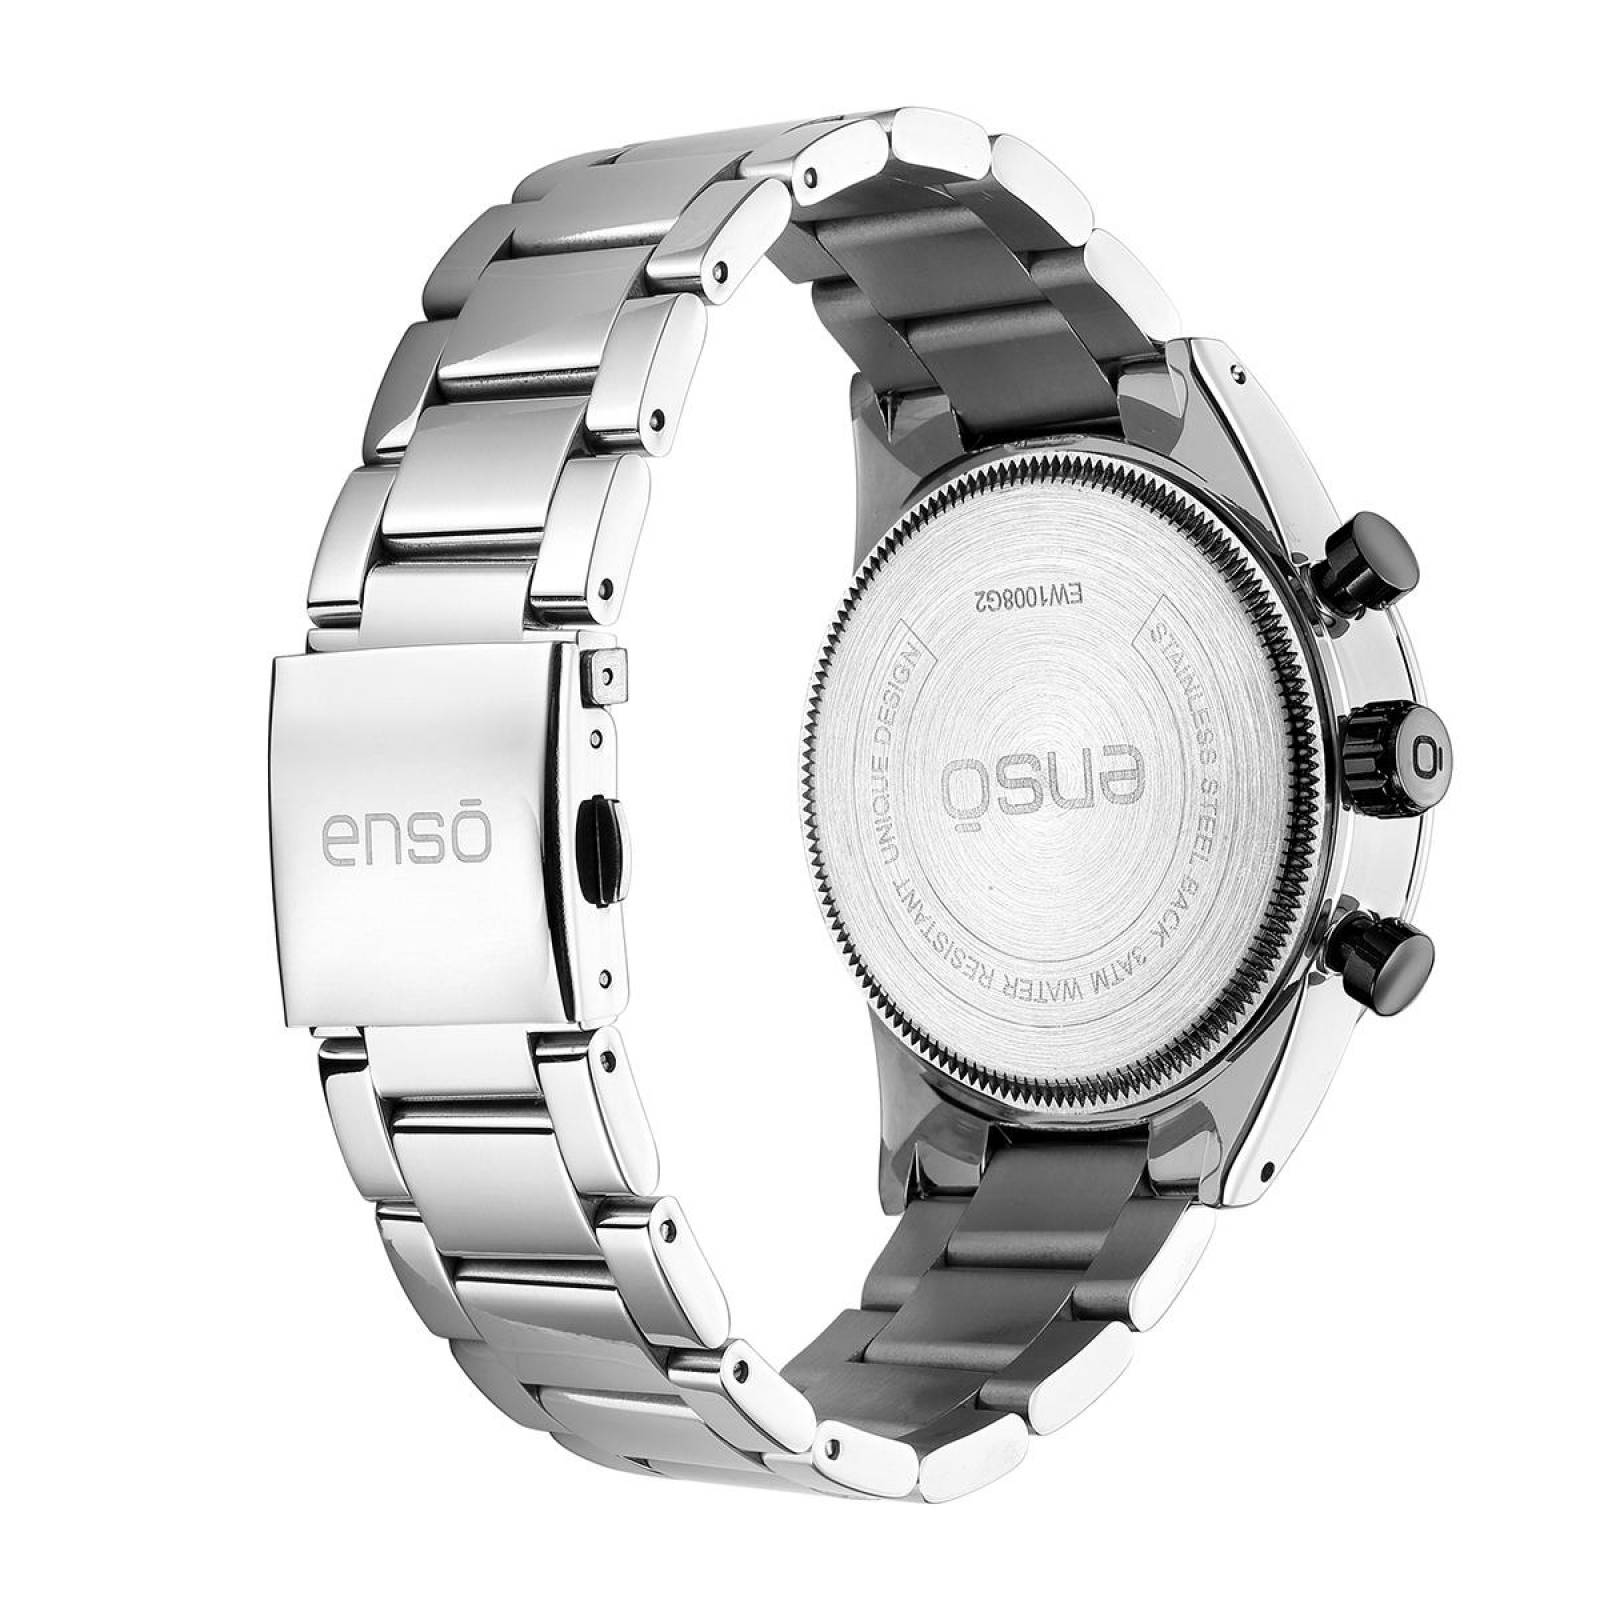 Reloj de Pulsera Enso para Hombre EW1008G2 